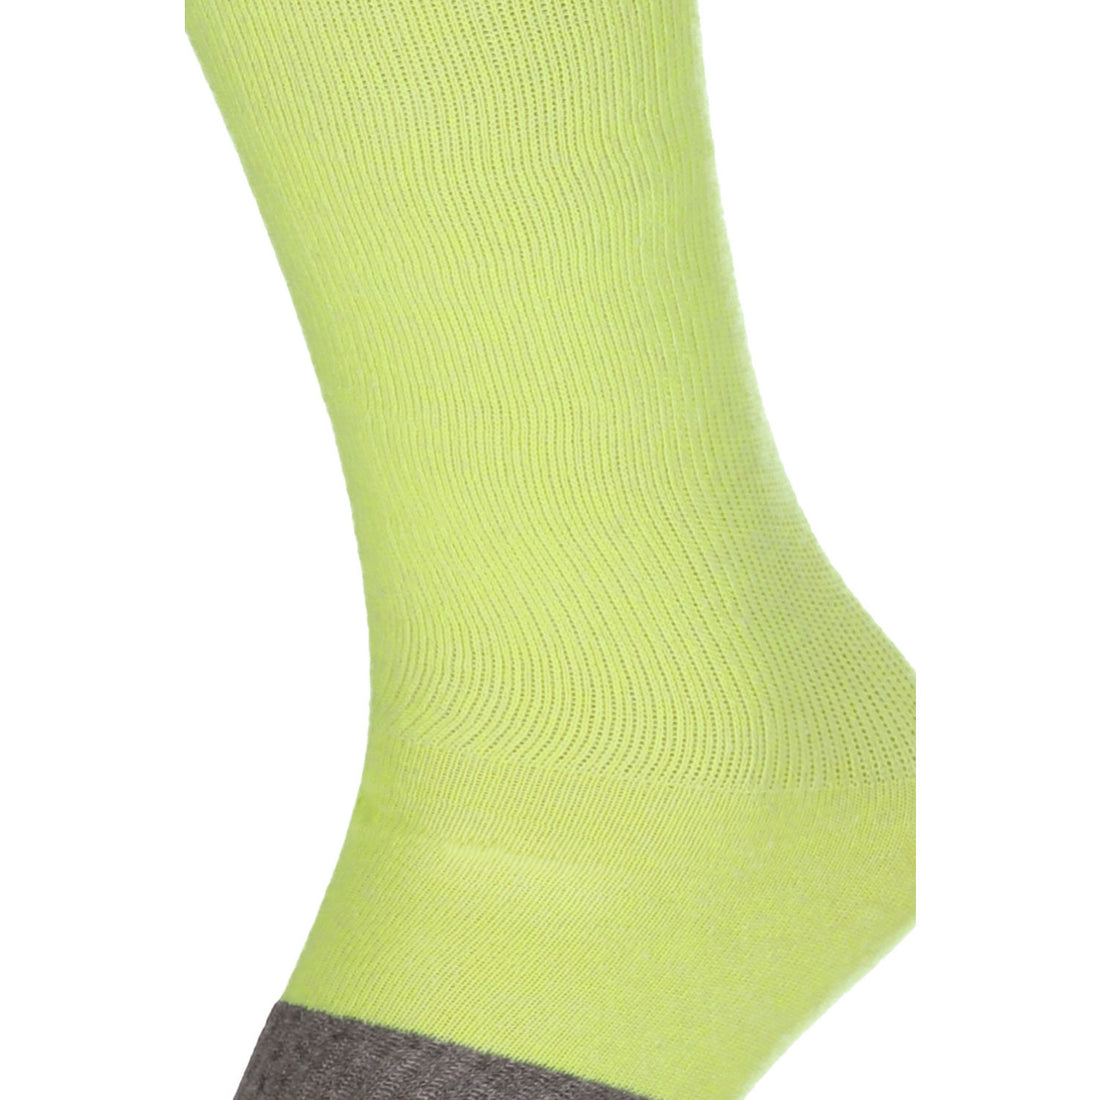 ChiliLifestyle Damen und Herren Compression Knie Socken Gelb 4er